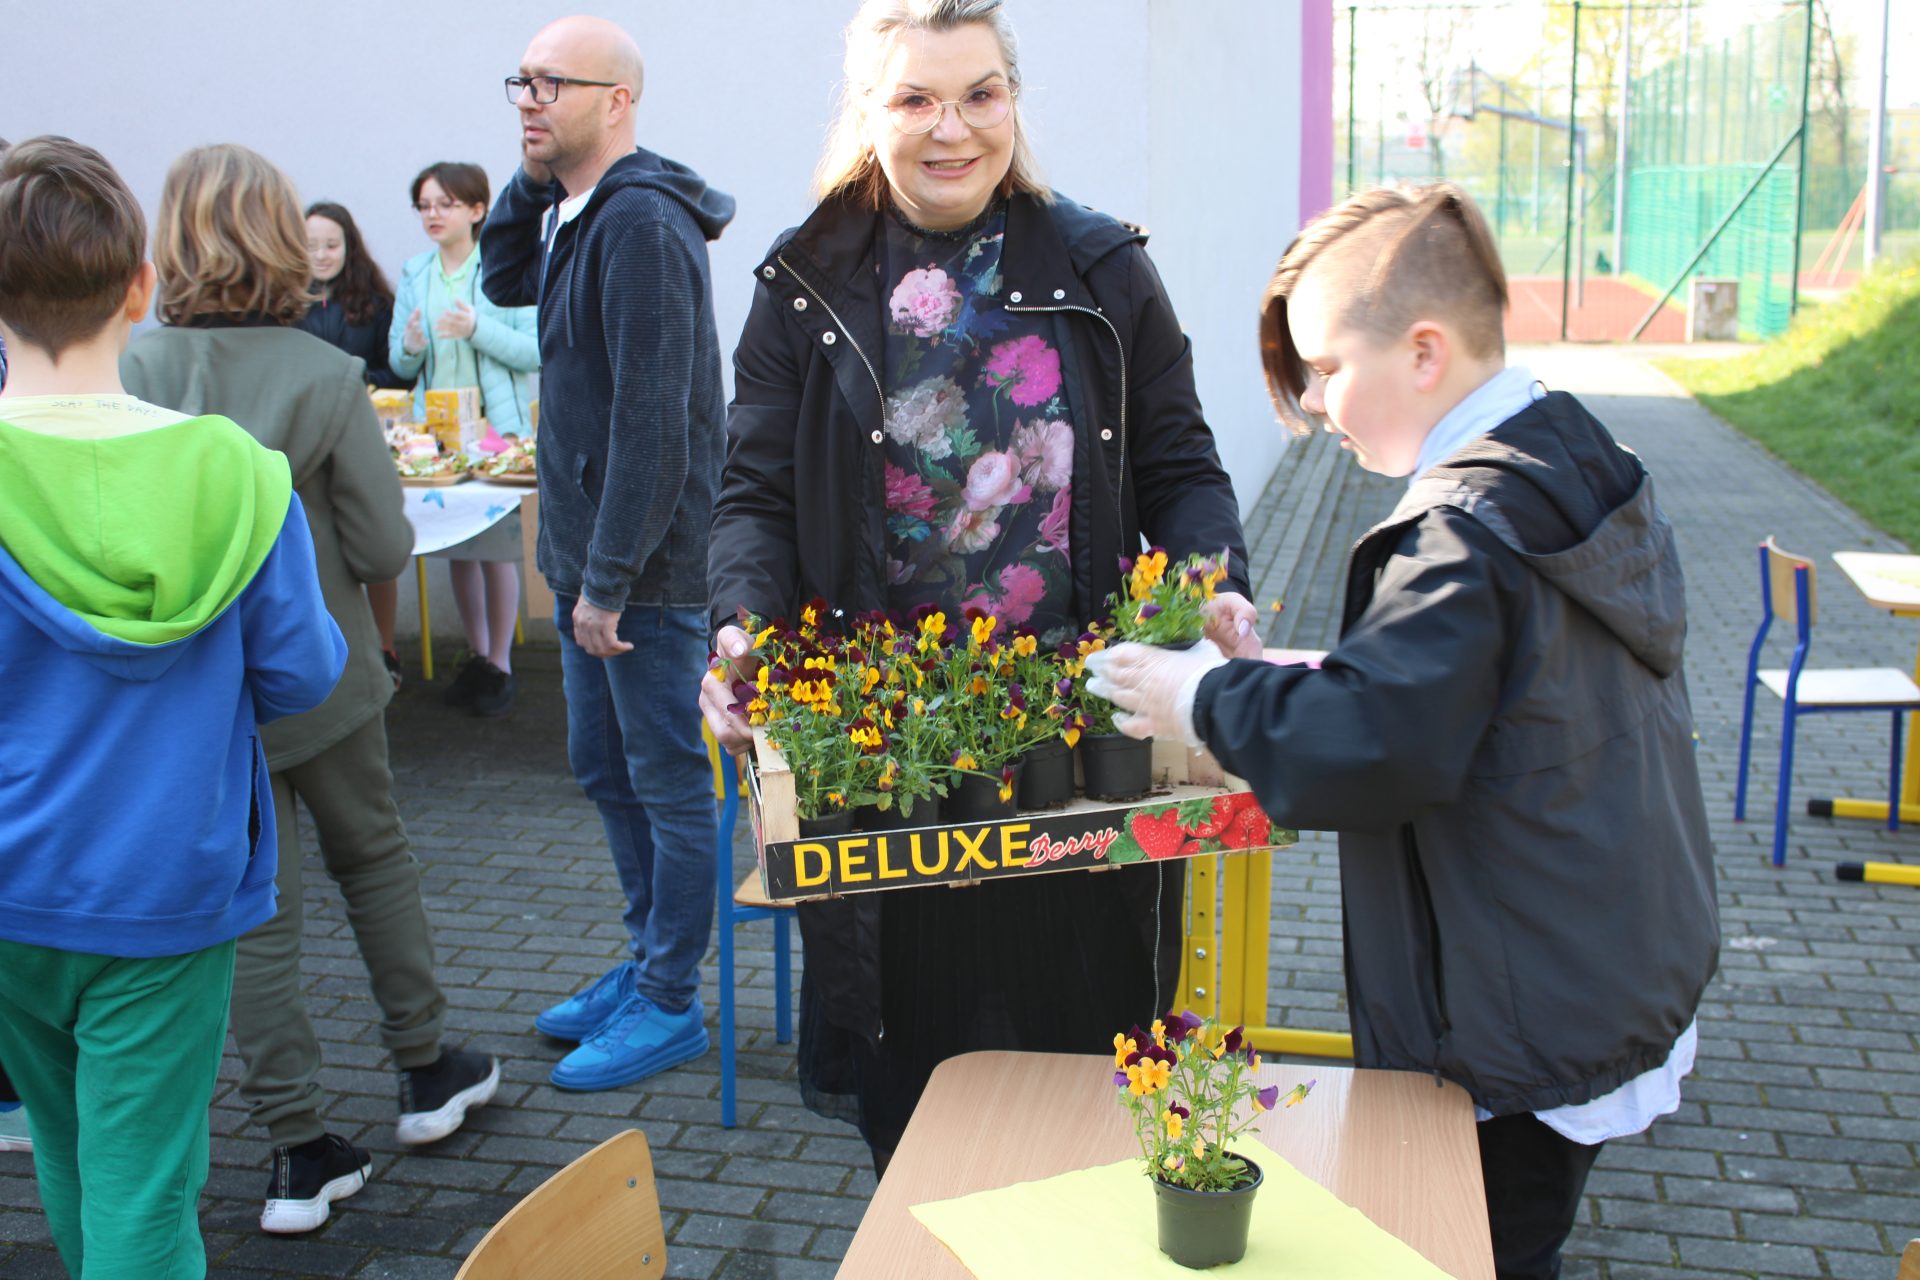 nauczycielka trzyma skrzynki z bratkami. Obok uczeń wyjmuje doniczki z kwiatkami. W tle uczniowie oraz kawiarenka szkolna.